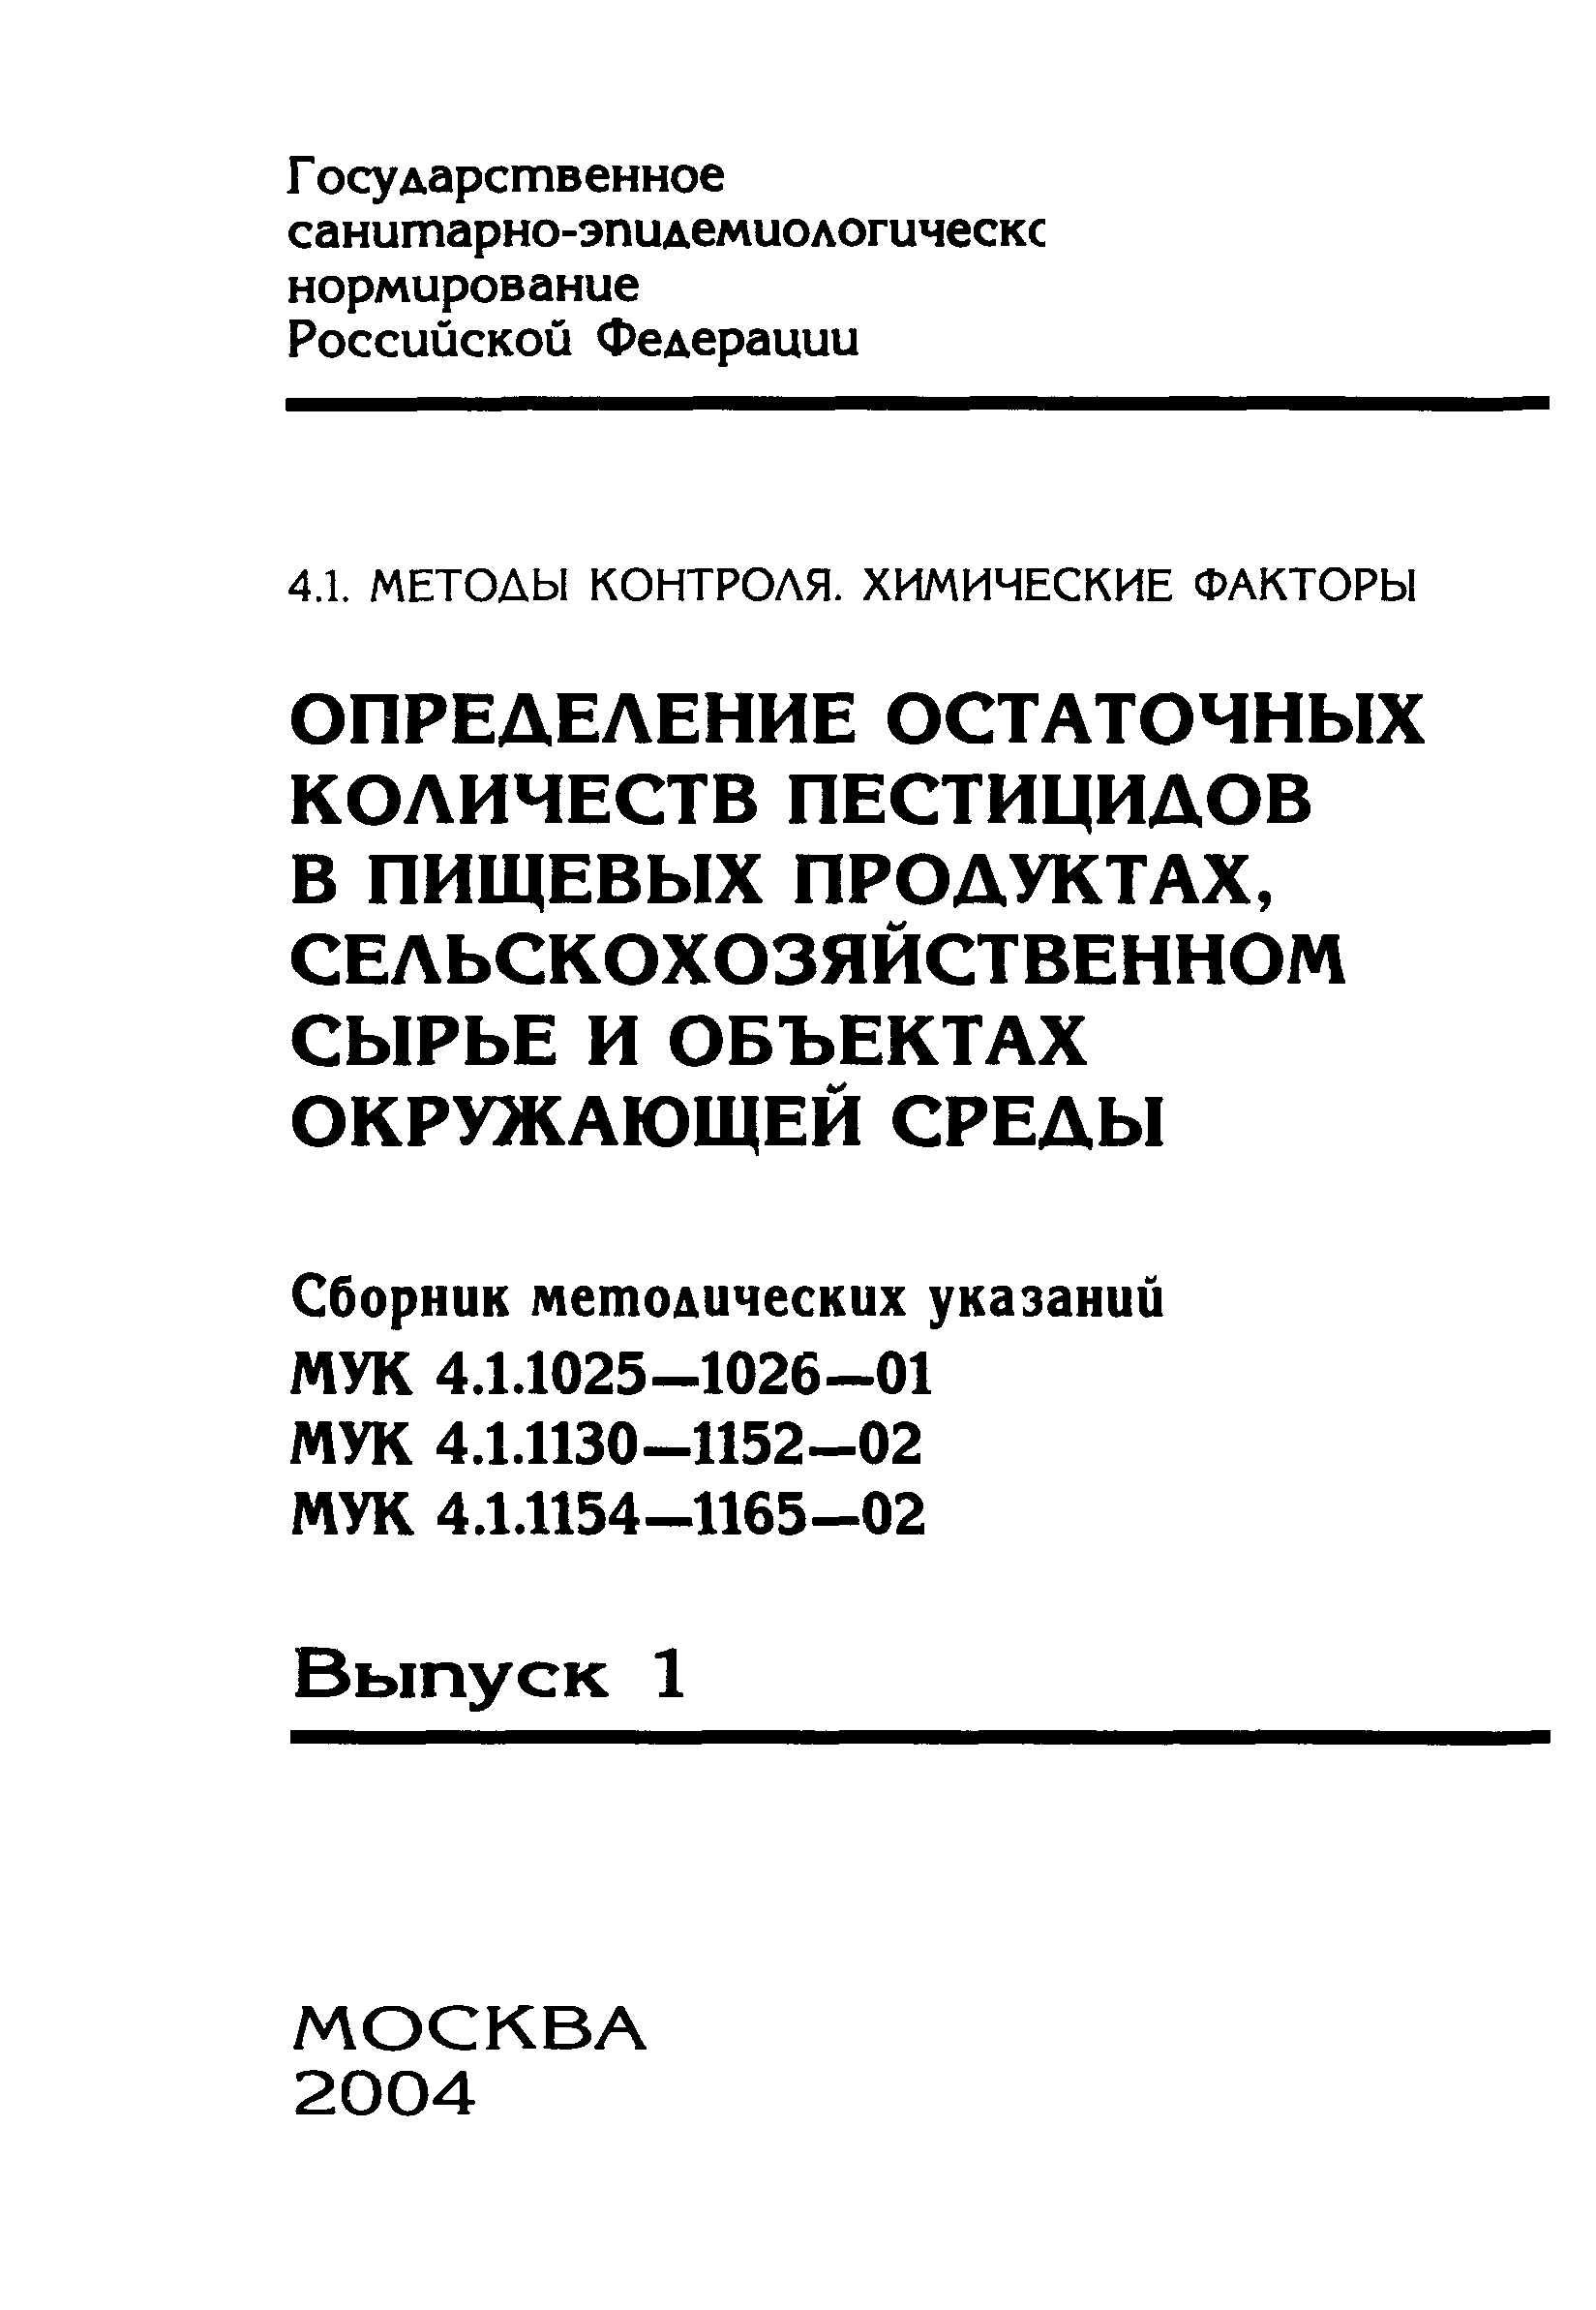 МУК 4.1.1140-02